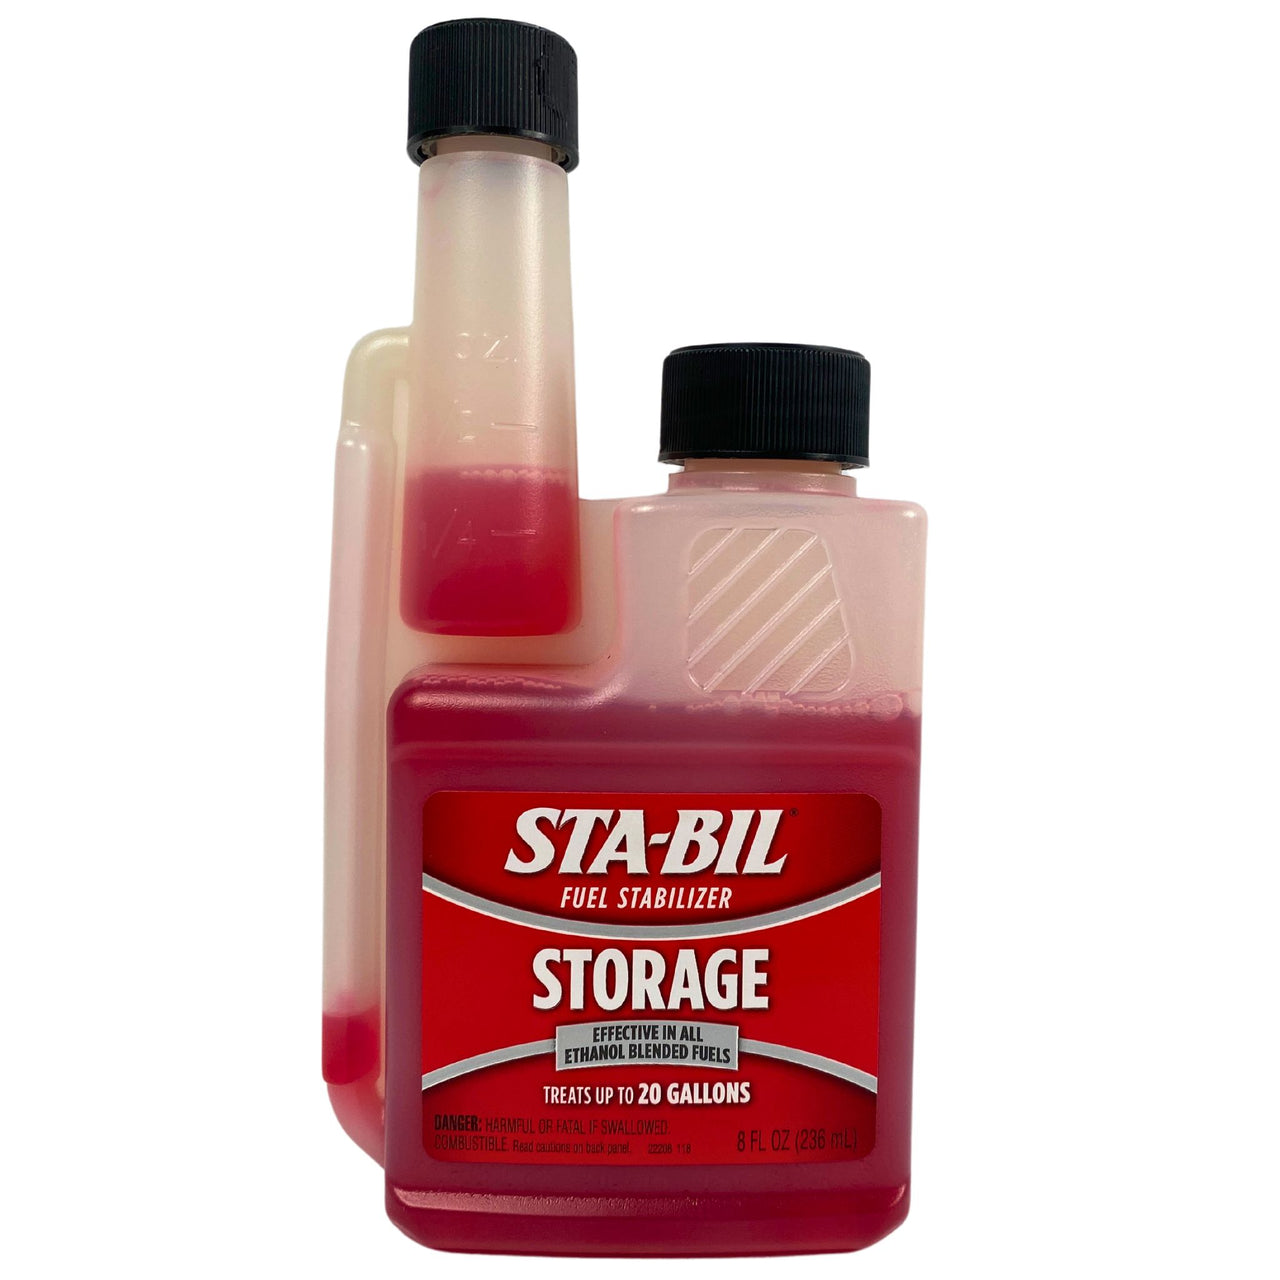 Sta-Bil Fuel Stabilizer Storage Effective